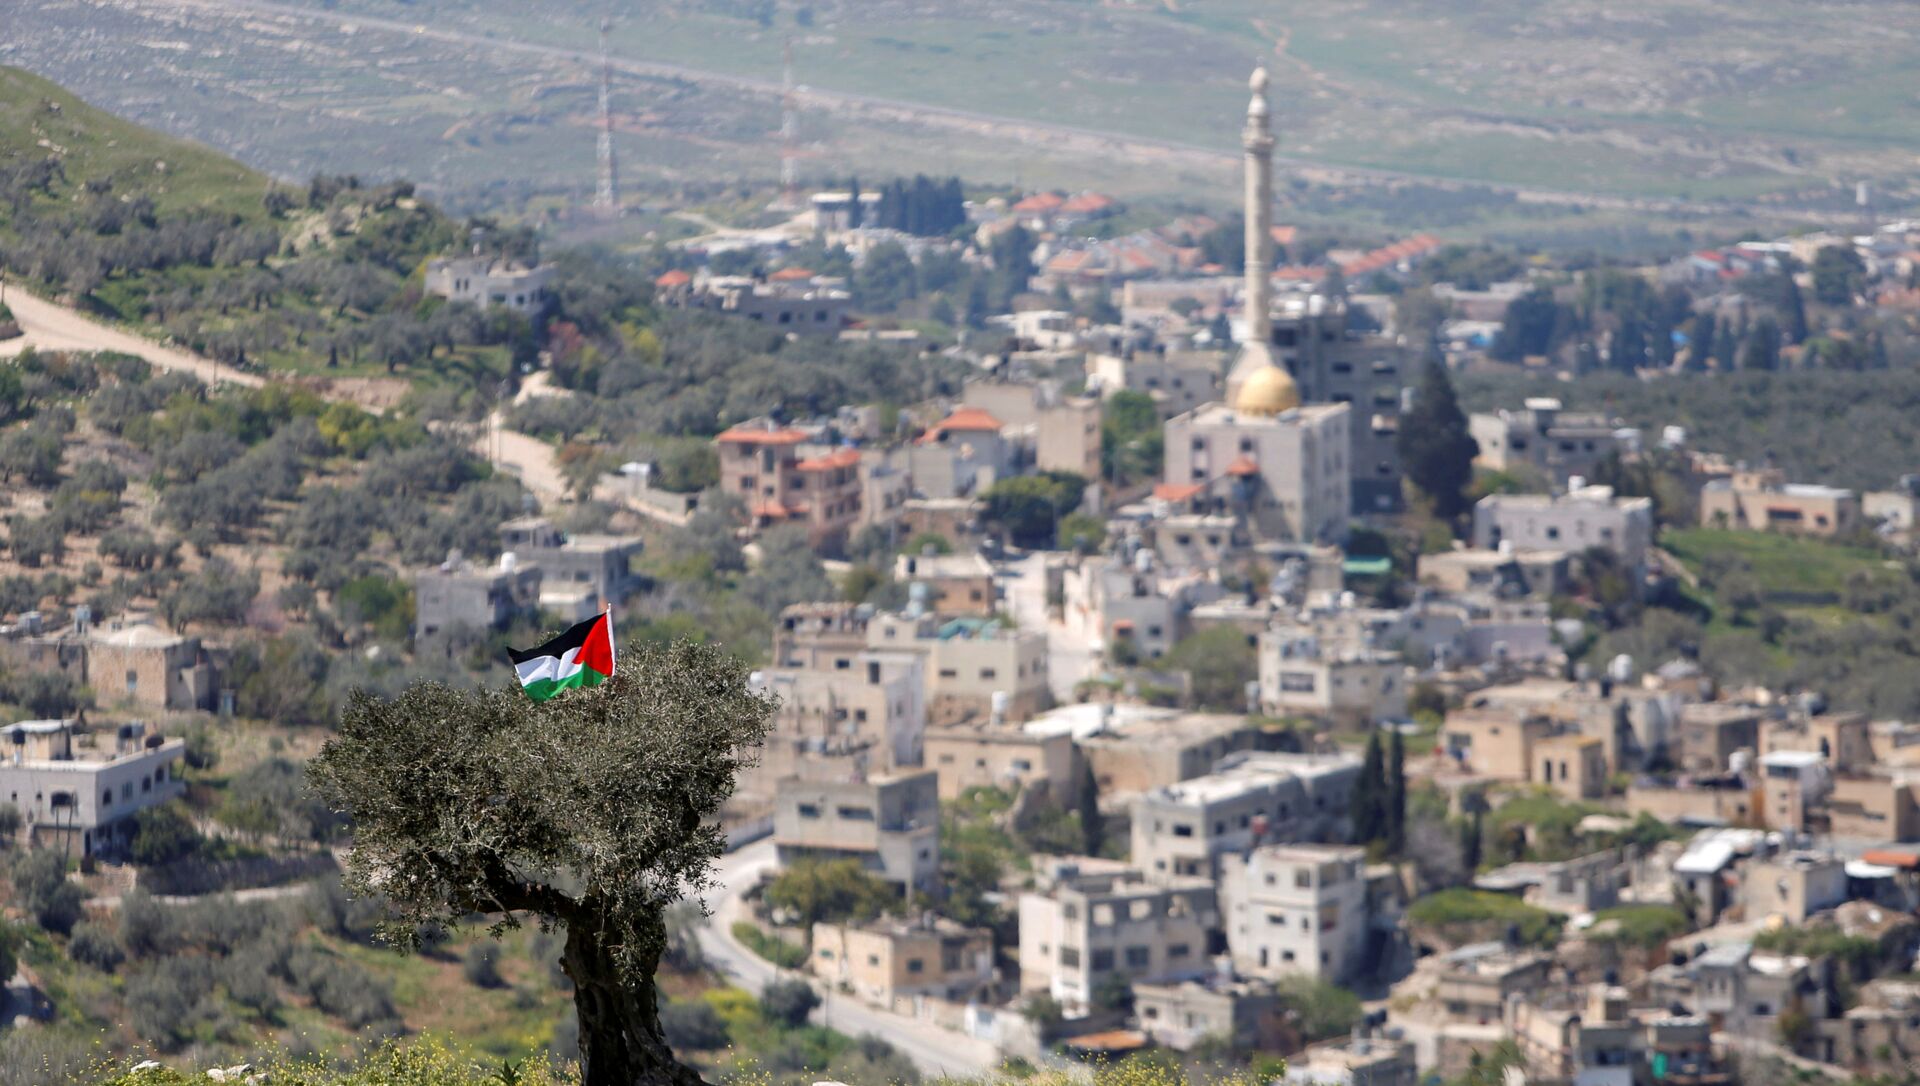 أخبار فلسطين - إسرائيل - مستطونة إسرائيلية في الناقورة بالقرب من نابلس، الضفة الغربية، 29 مارس 2021 - سبوتنيك عربي, 1920, 23.10.2021